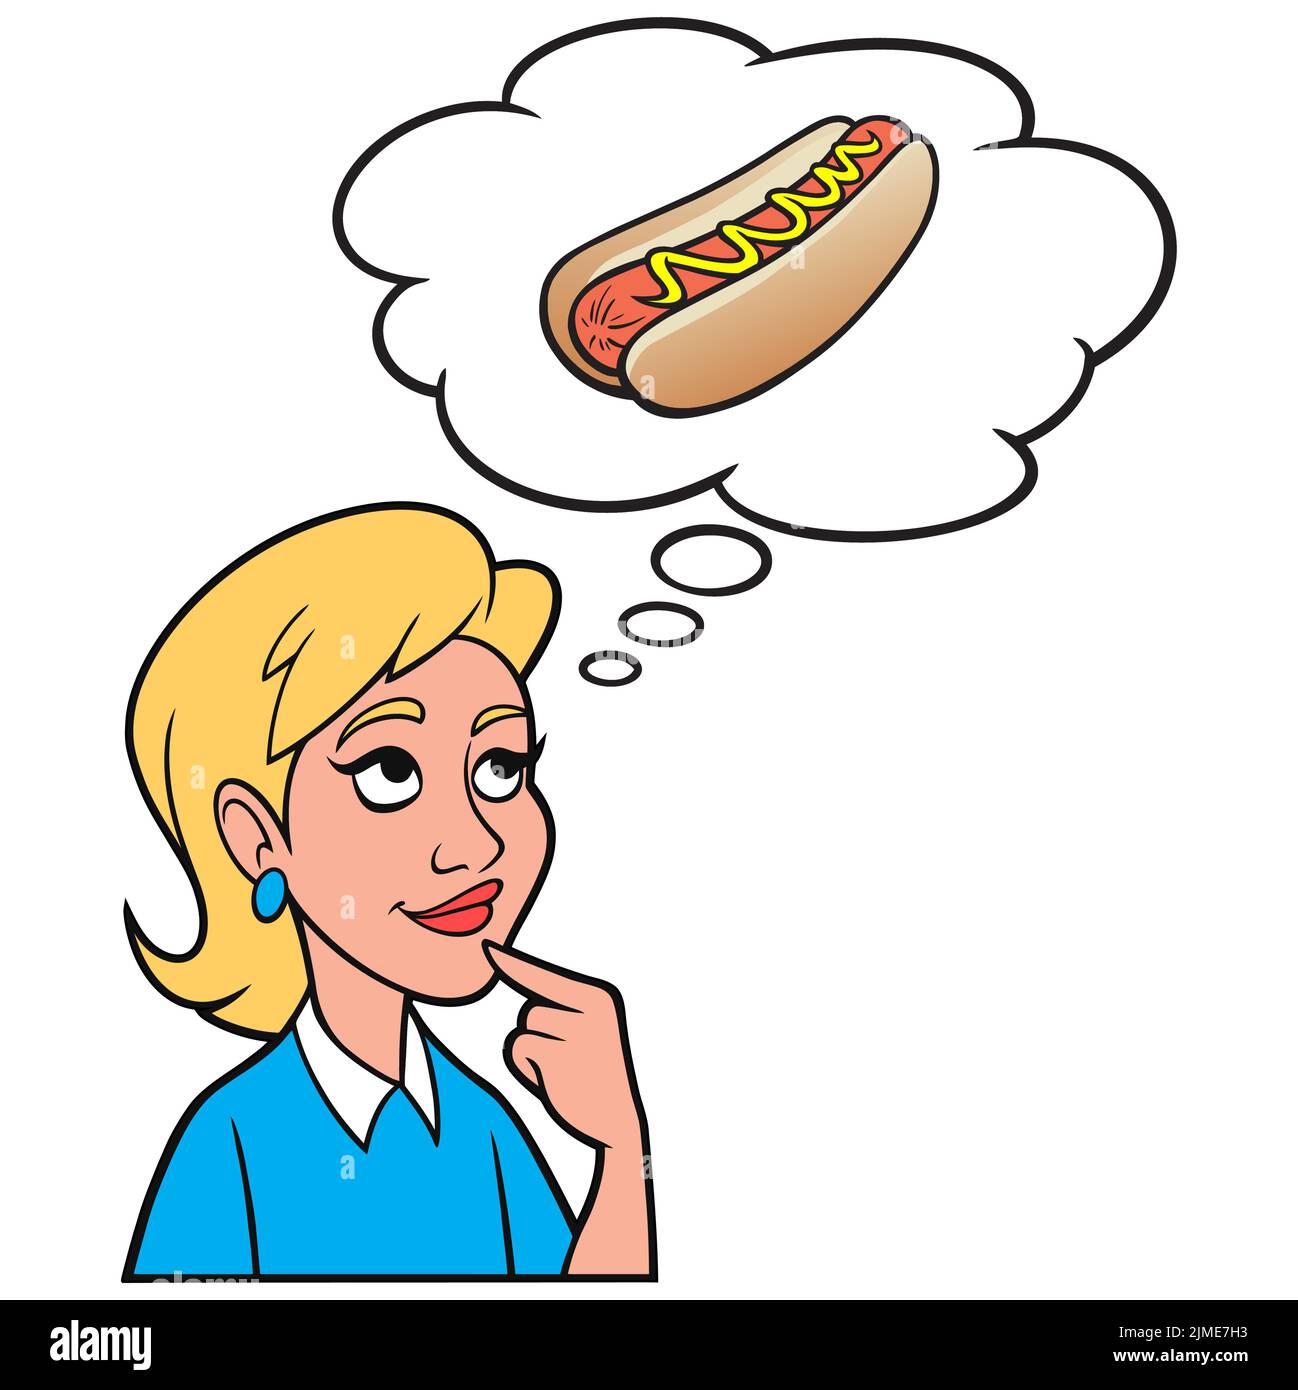 Chica Pensando en un Hotdog - Una ilustración de dibujos animados de una chica pensando en un Hotdog para el almuerzo. Ilustración del Vector